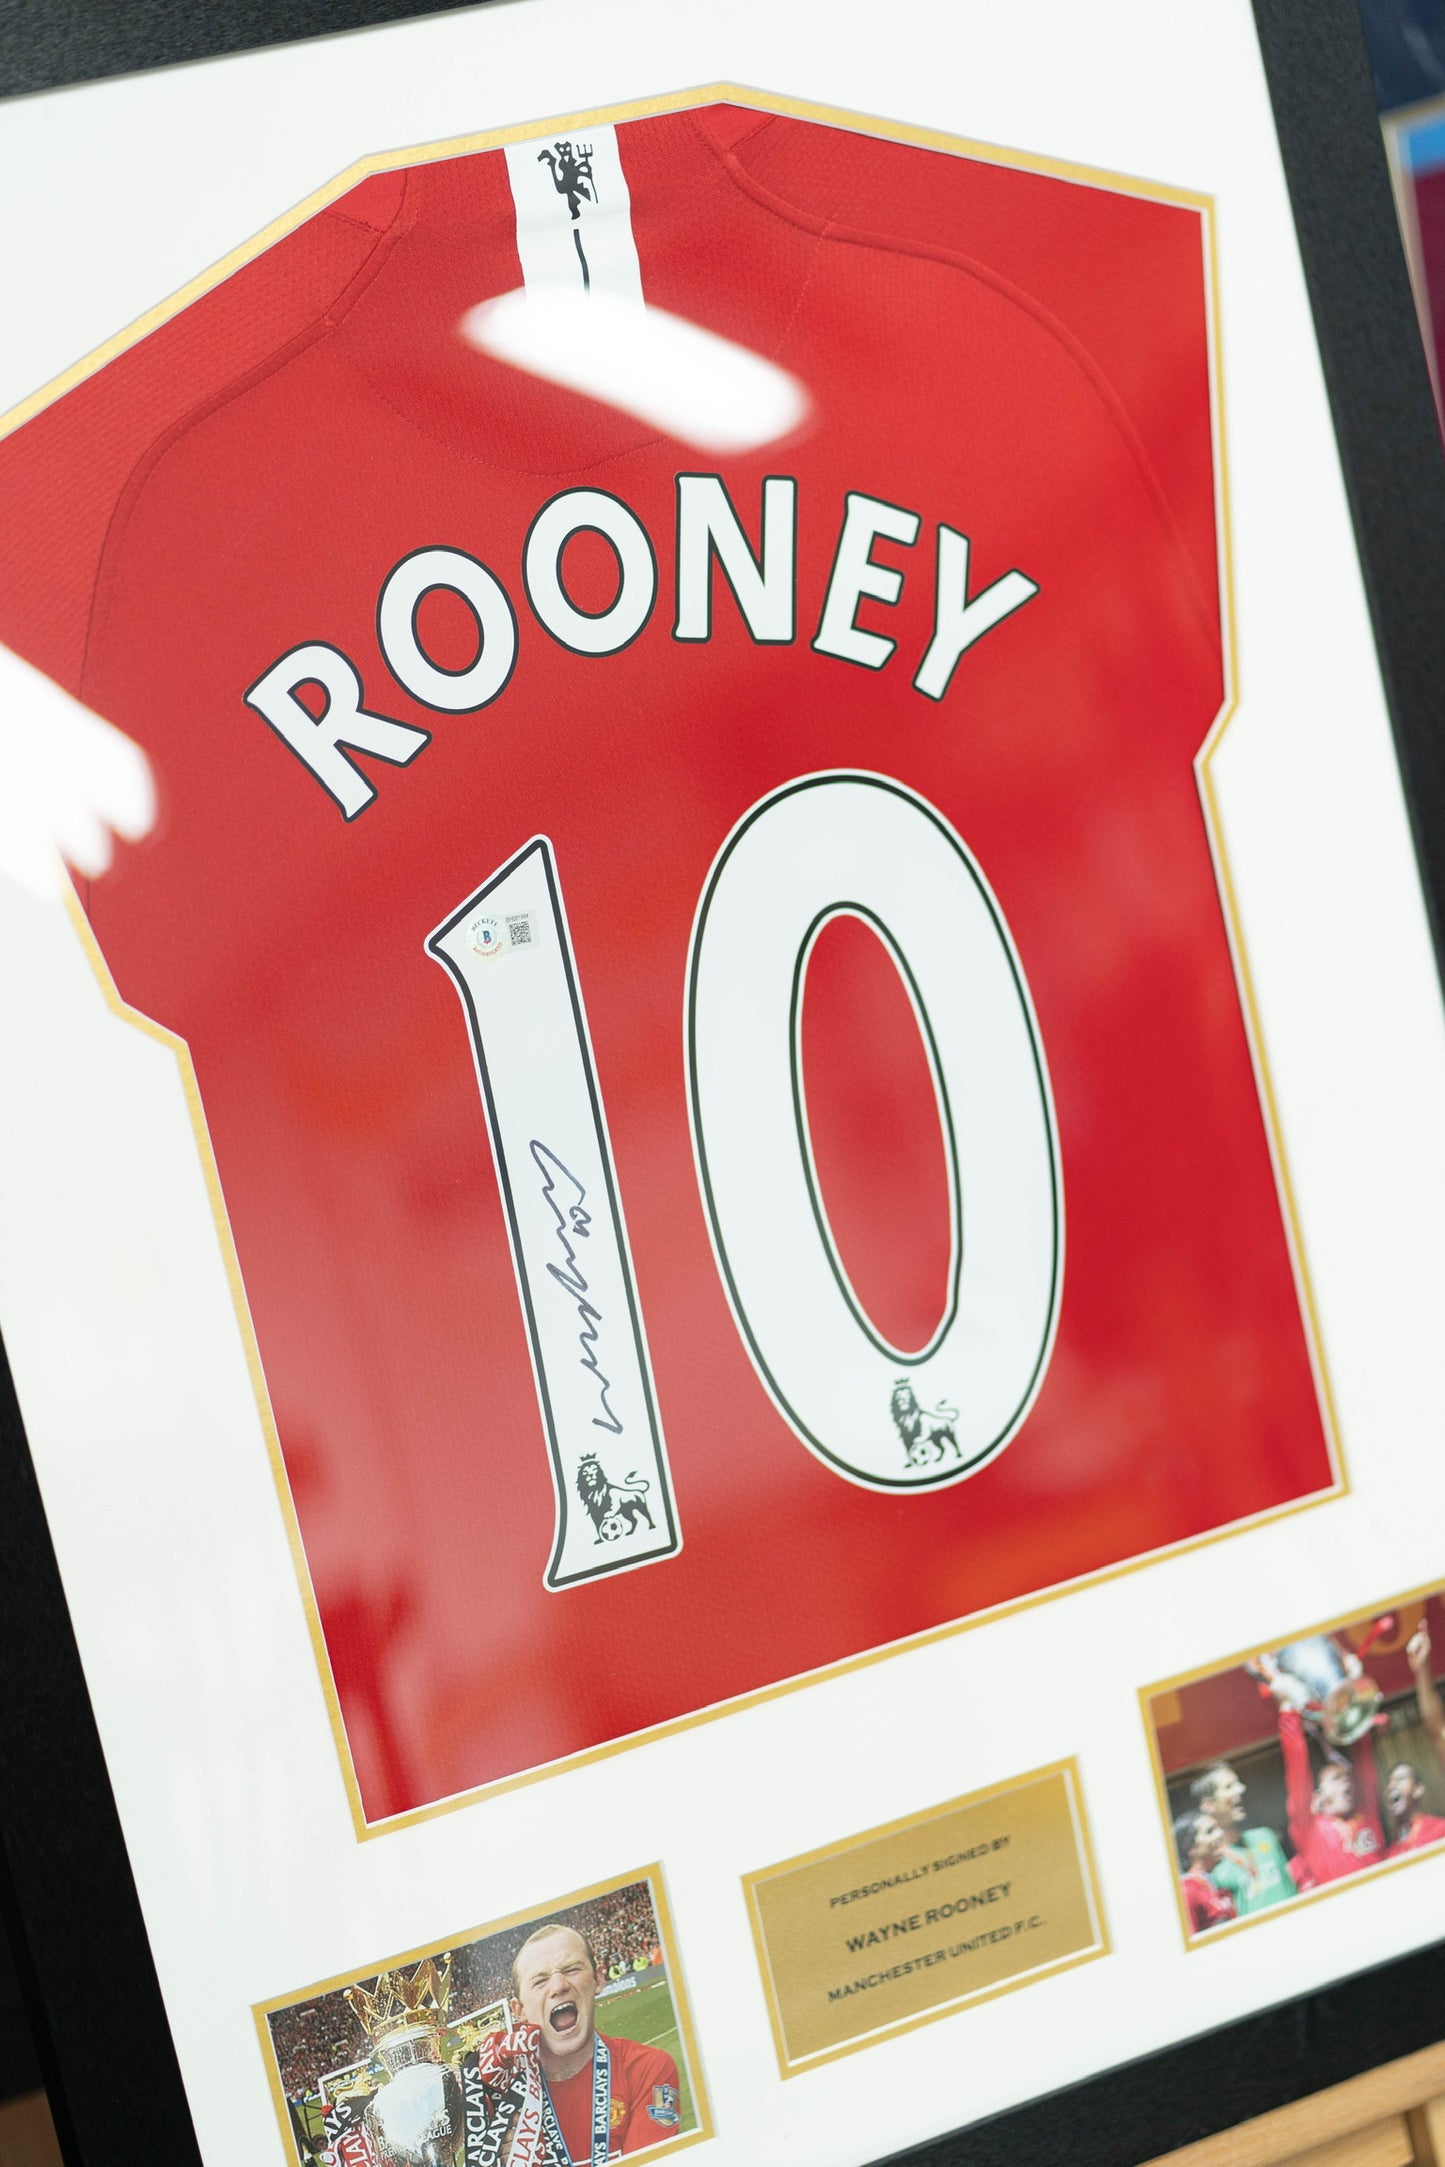 朗尼 Wayne Rooney 曼聯 主場球衣裱框 (背簽)